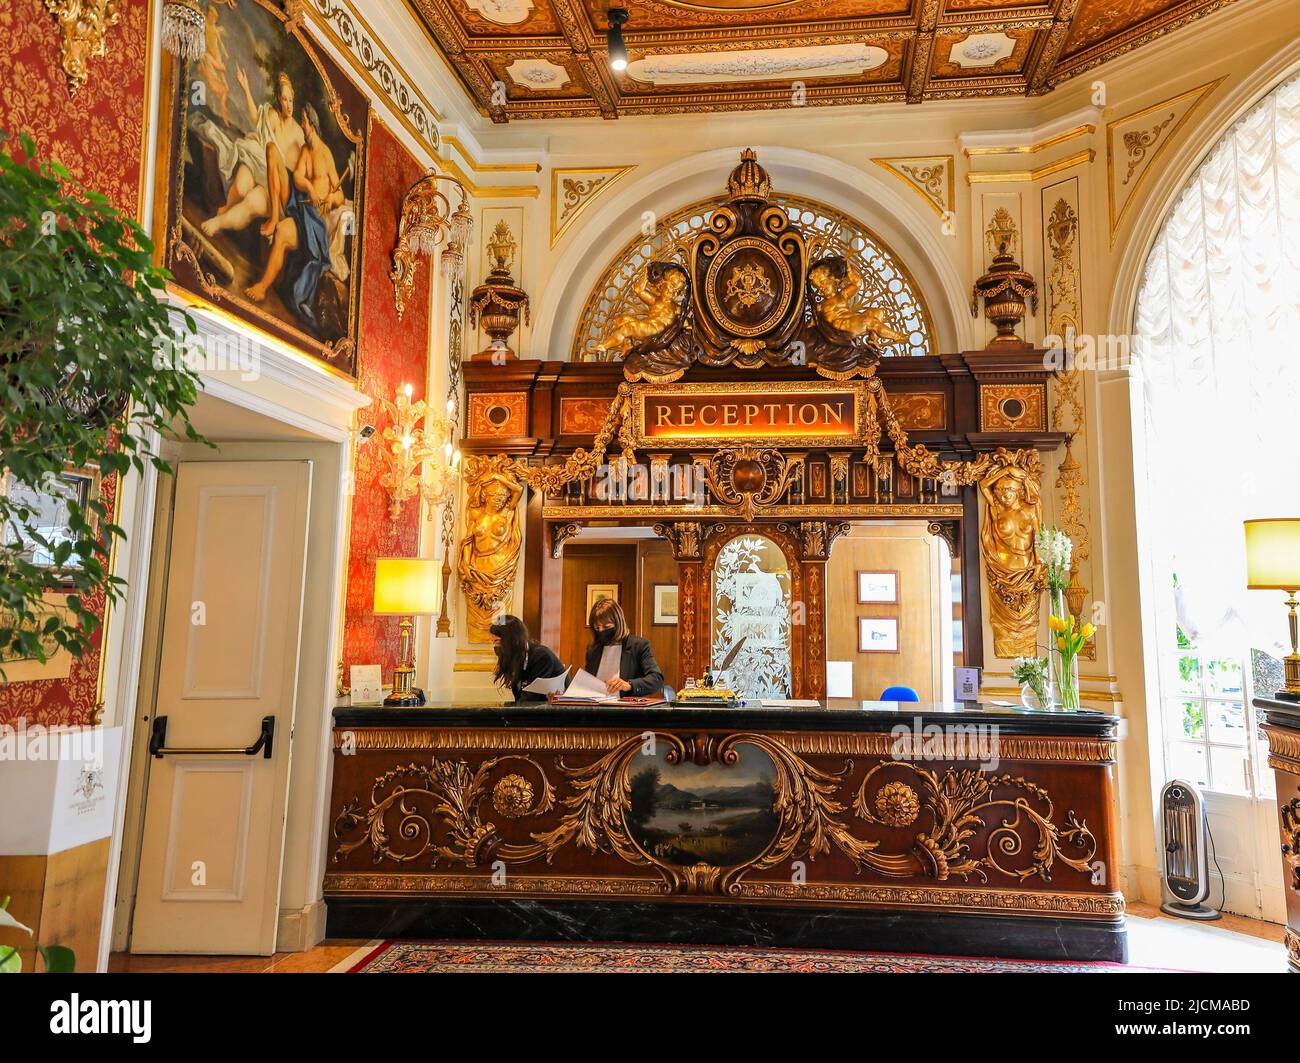 The Grand Hotel des Iles Borromees, Stresa, Lake Maggiore, Italy Stock Photo